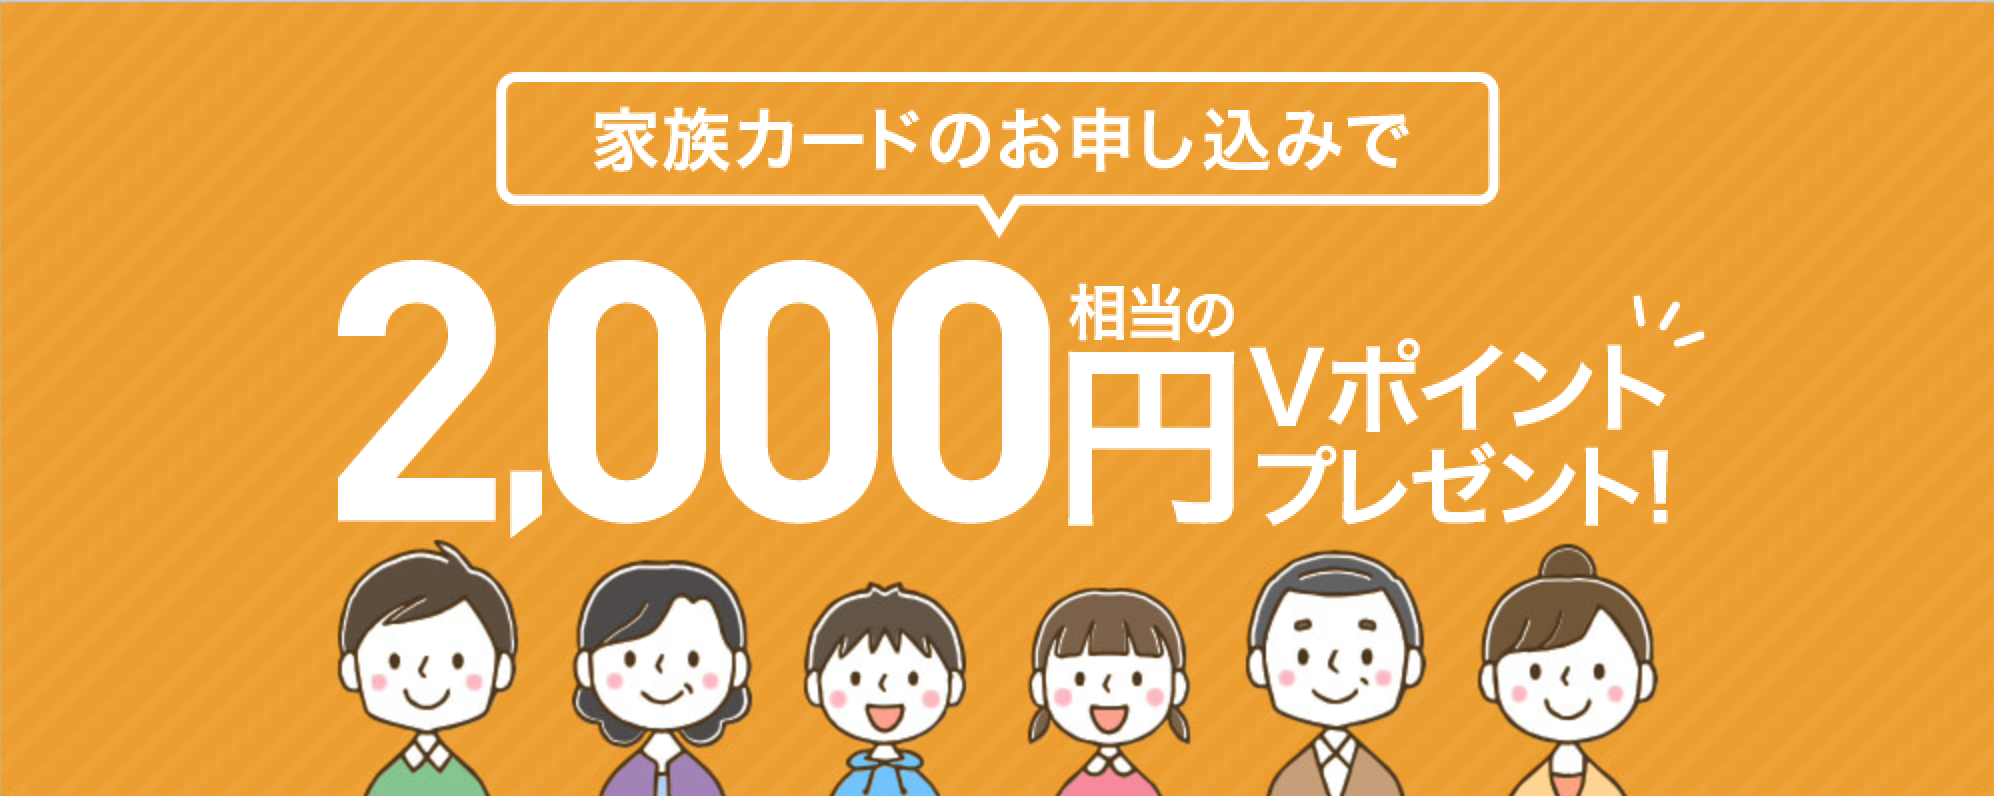 家族カードの申し込みで2,000円相当のVポイント還元キャンペーン